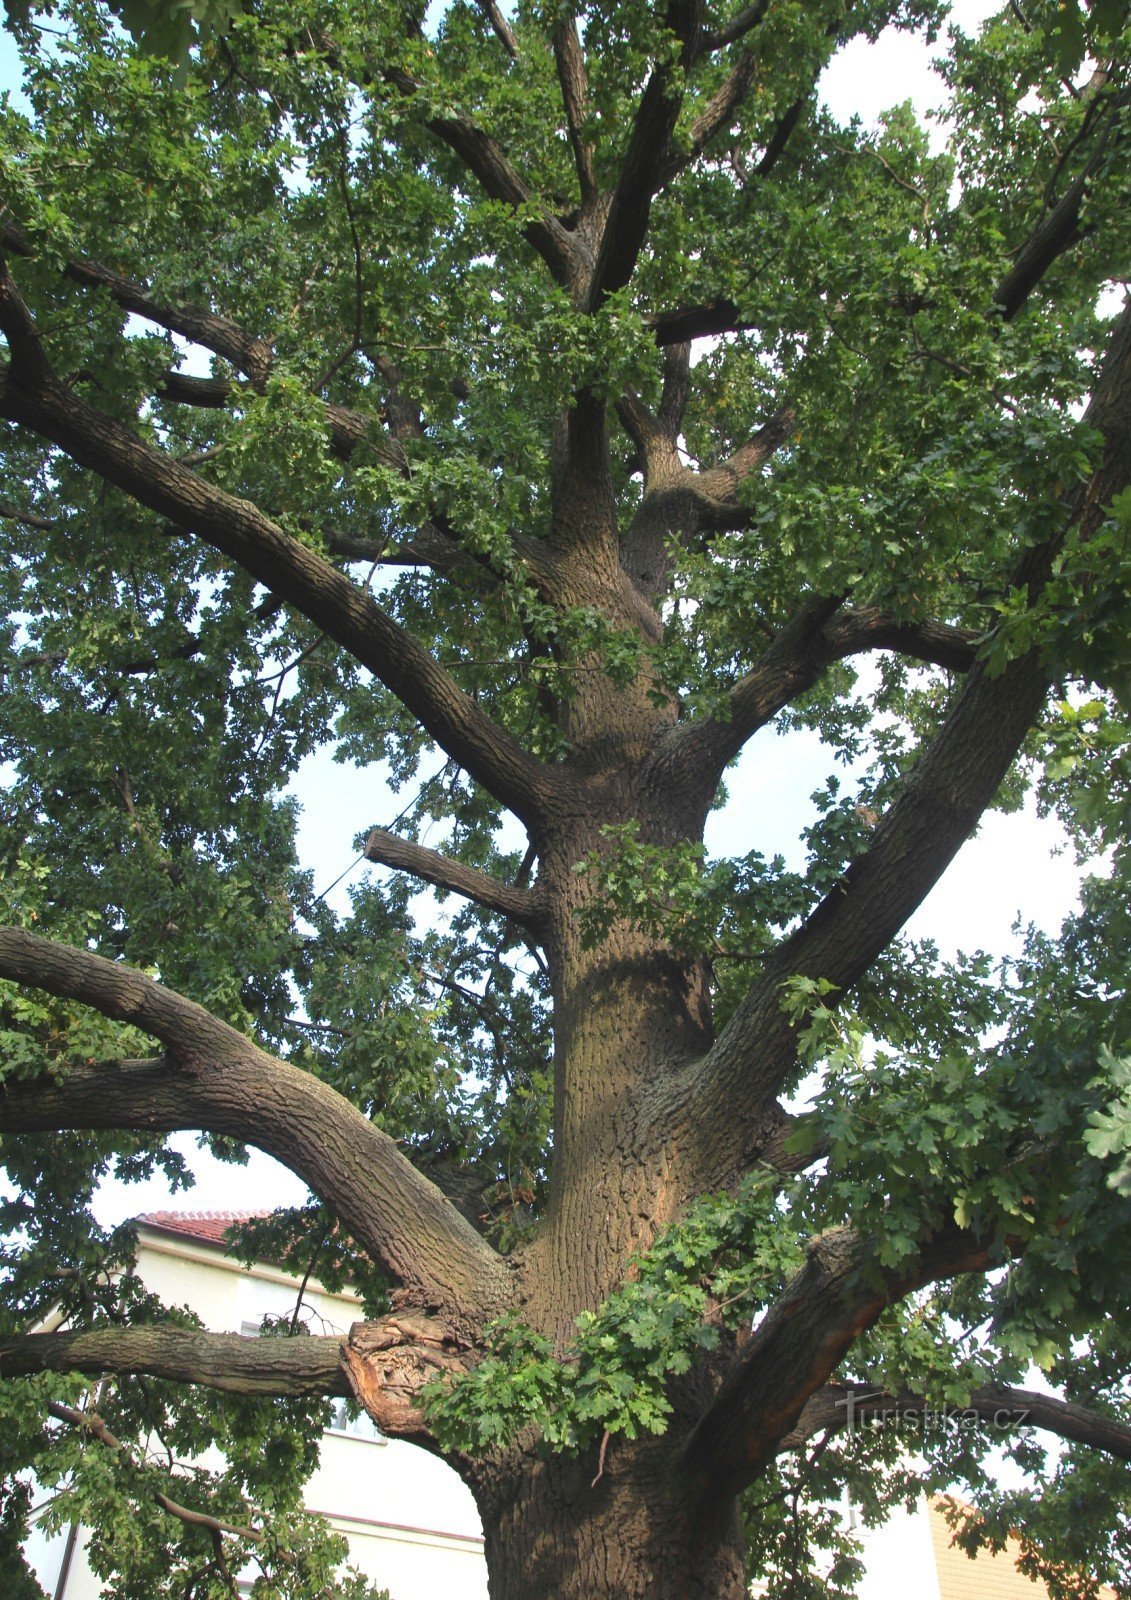 Brno-Komárov - oak tree near the church of St. Lily